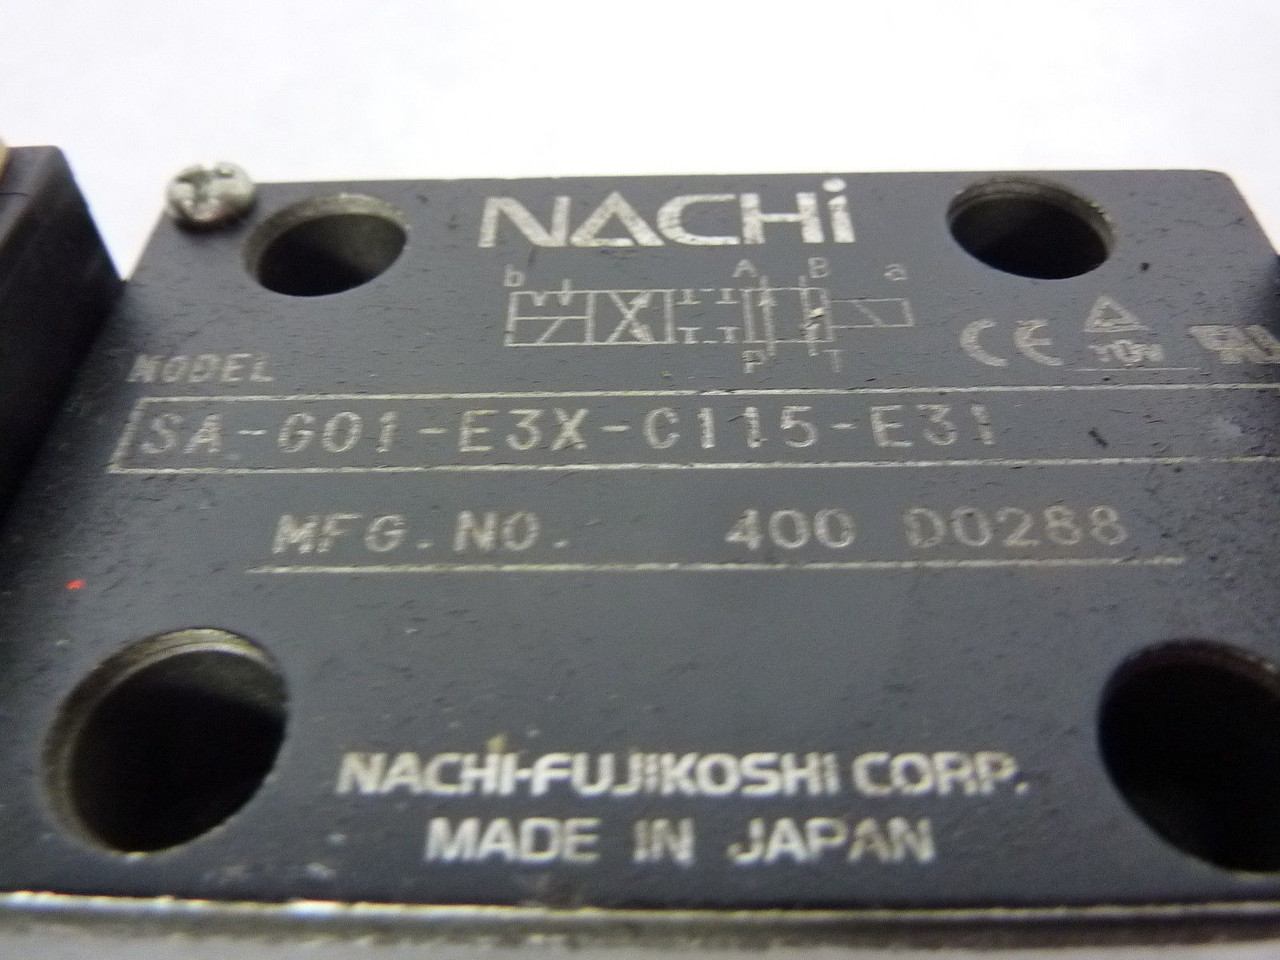 Nachi SA-G01-E3X-C115-E31 Solenoid Valve USED